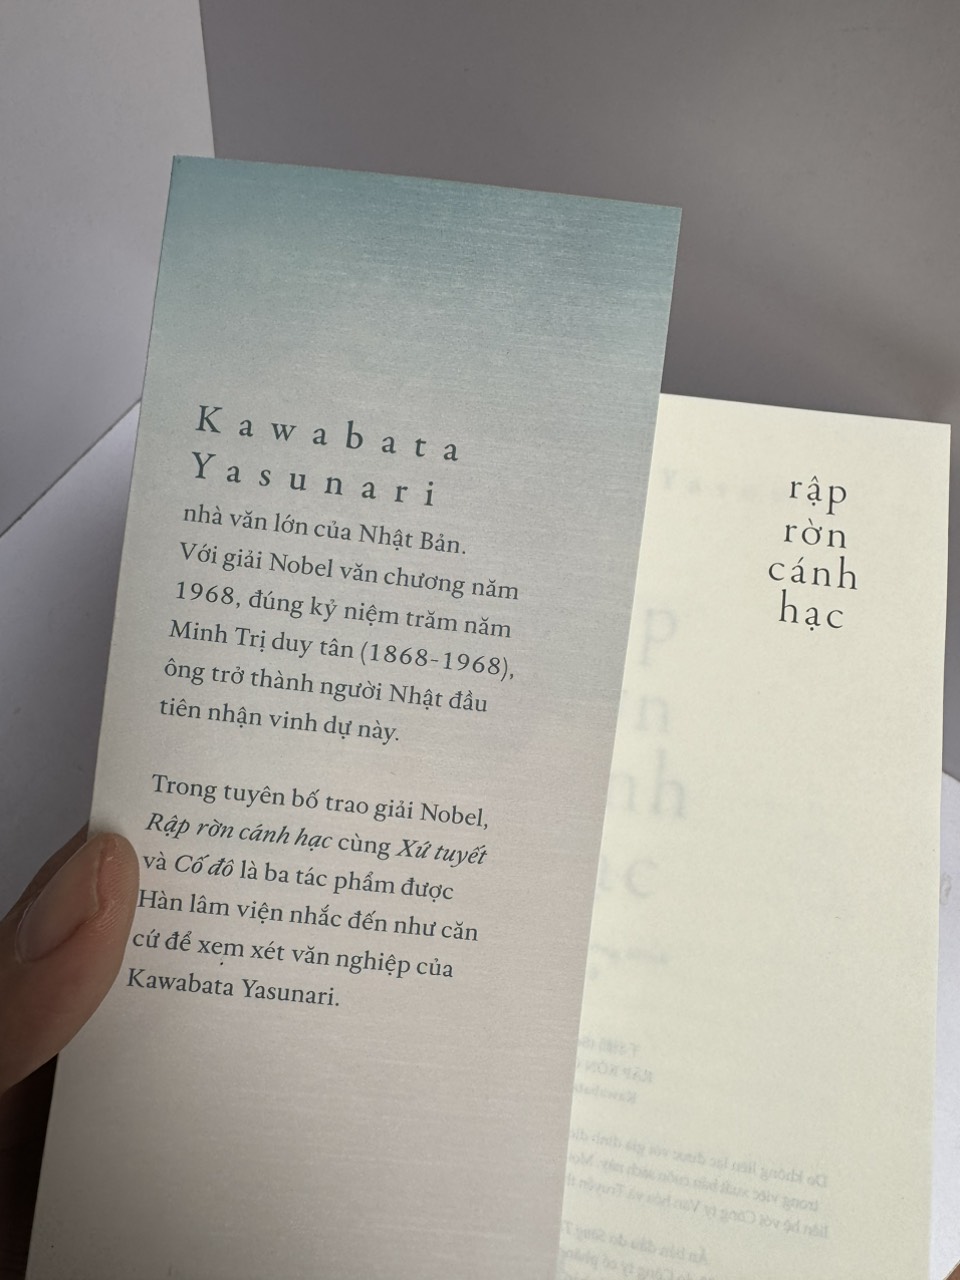  (Tác giả giành giải Nobel Văn chương 1968) RẬP RỜN CÁNH HẠC – Kawabata Yasunari – Nguyễn Tường Minh dịch – Nhã Nam 